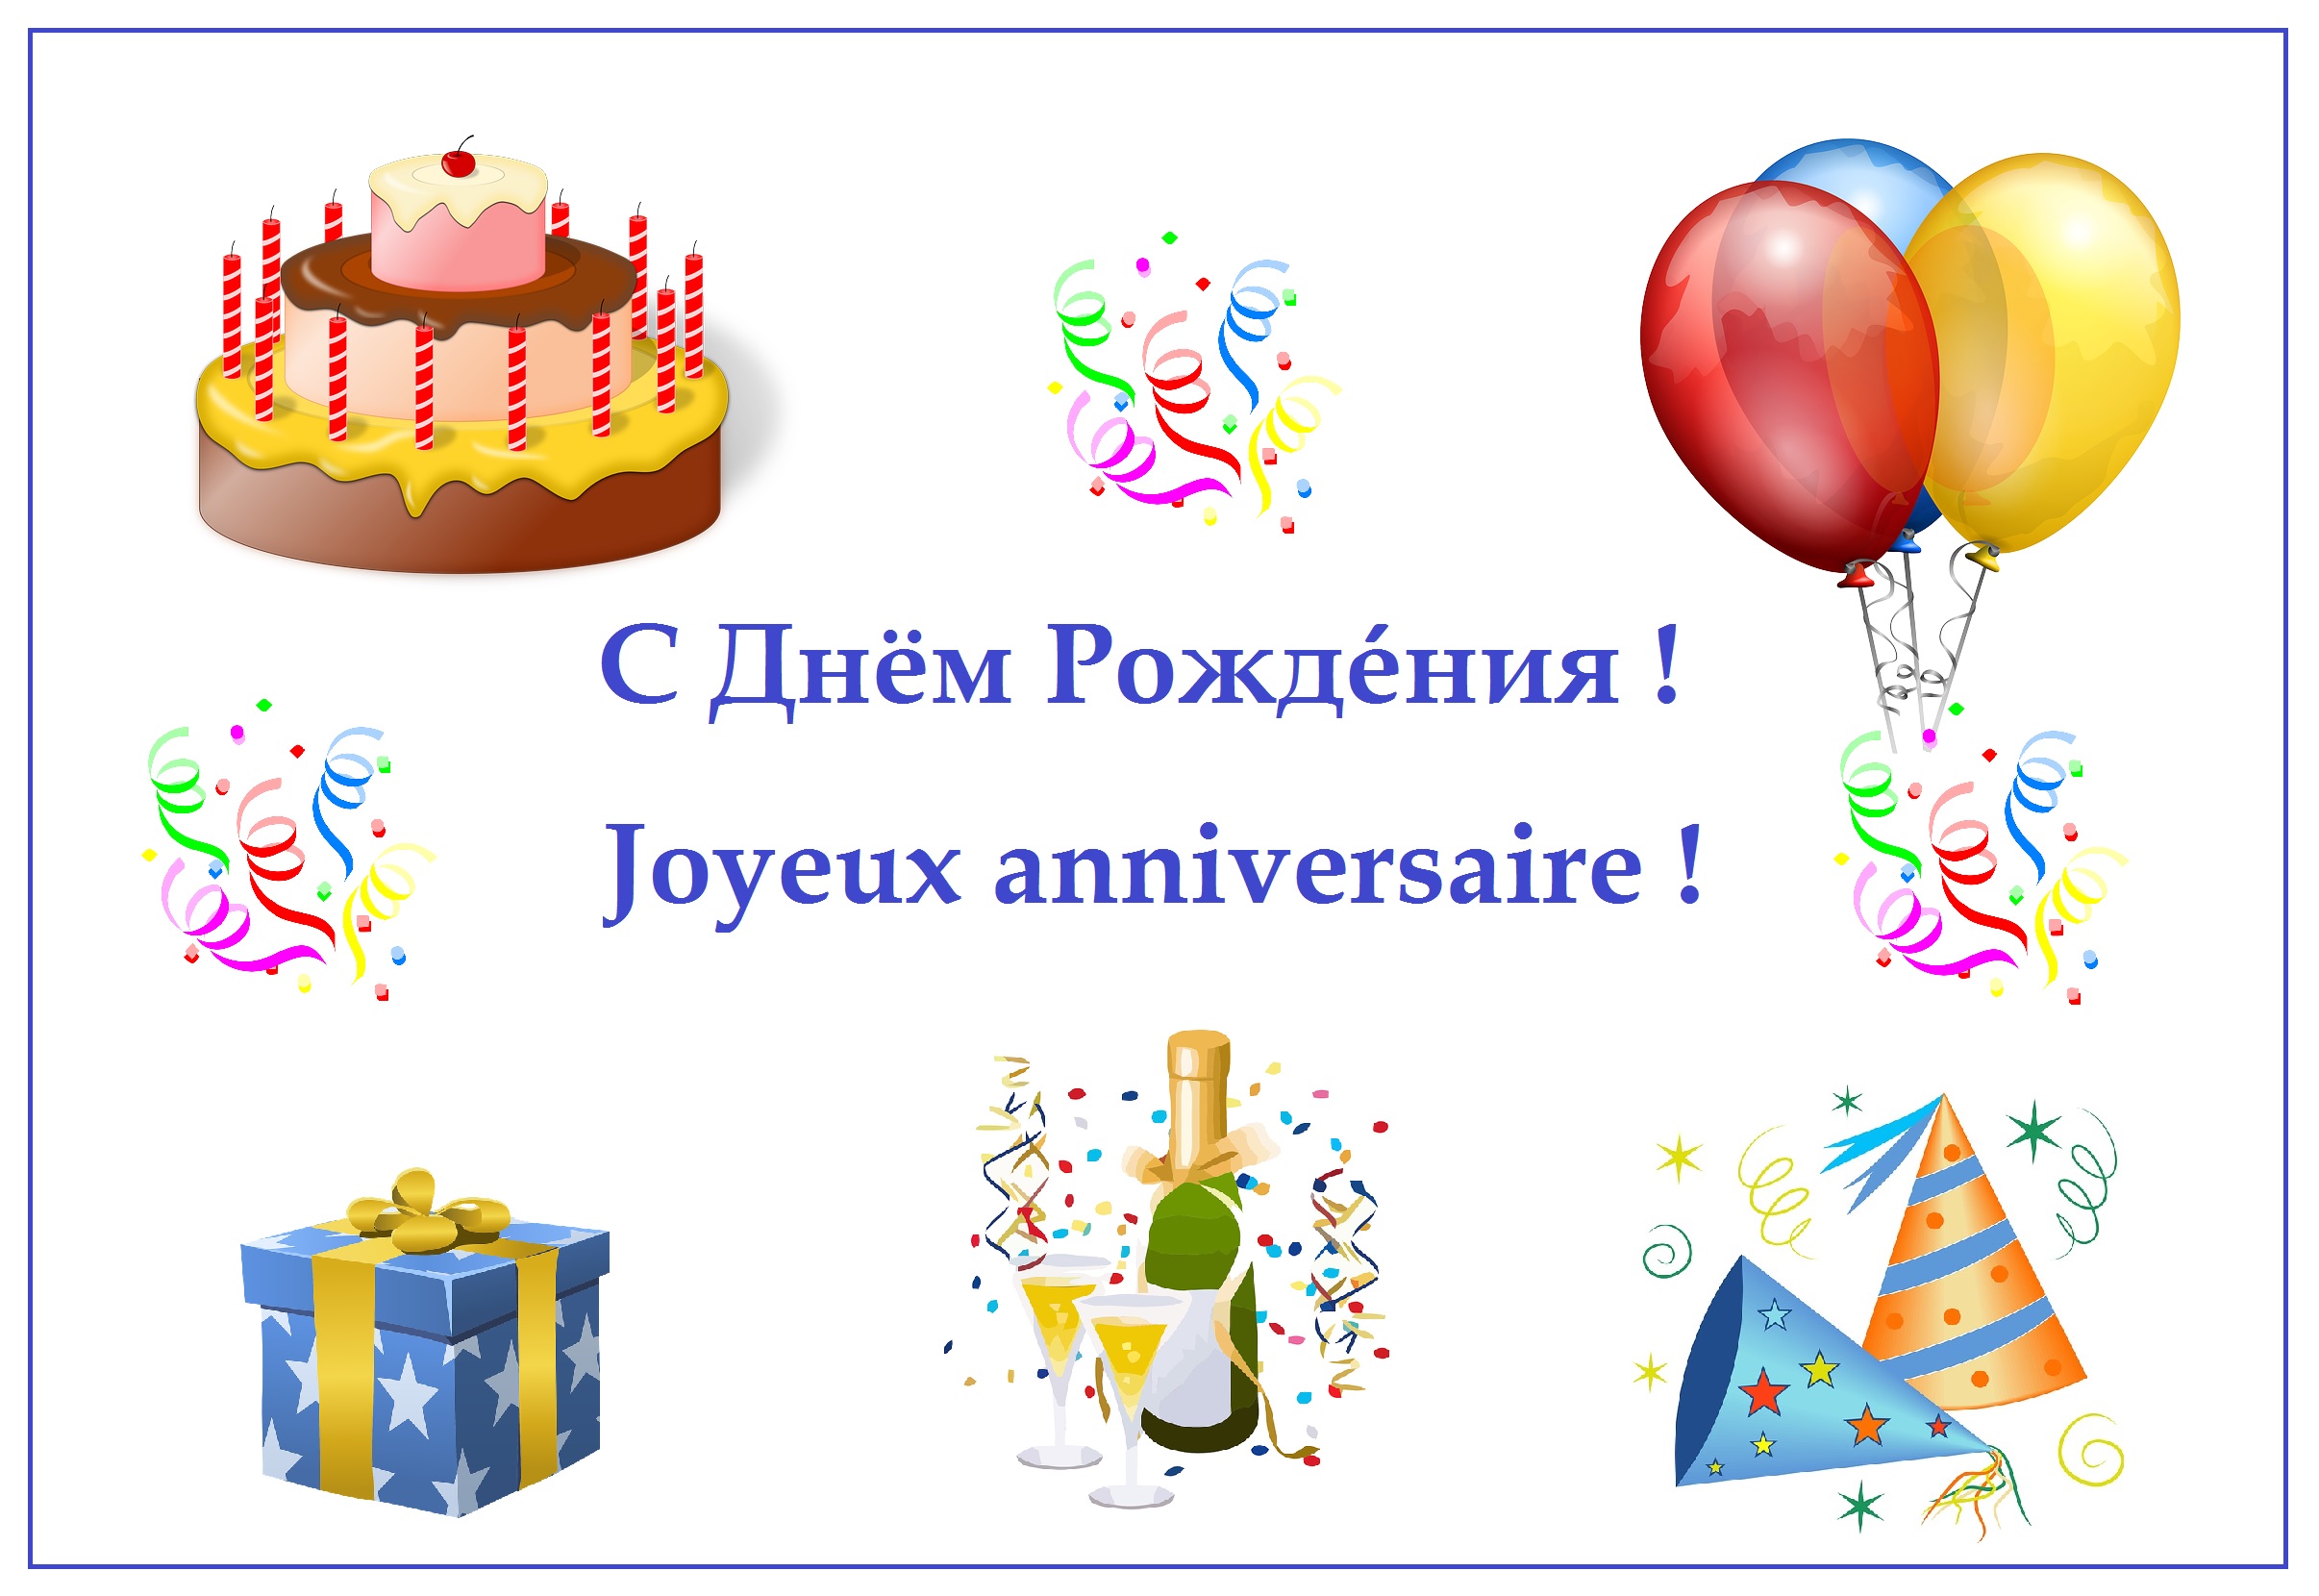 Поздравить с днем рождения перевод. Поздравление с днем рождения на французском. Поздравление с днём рождения на французском языке. Поздравление с днем рождения на французском языке открытка. Французские открытки с днем рождения.